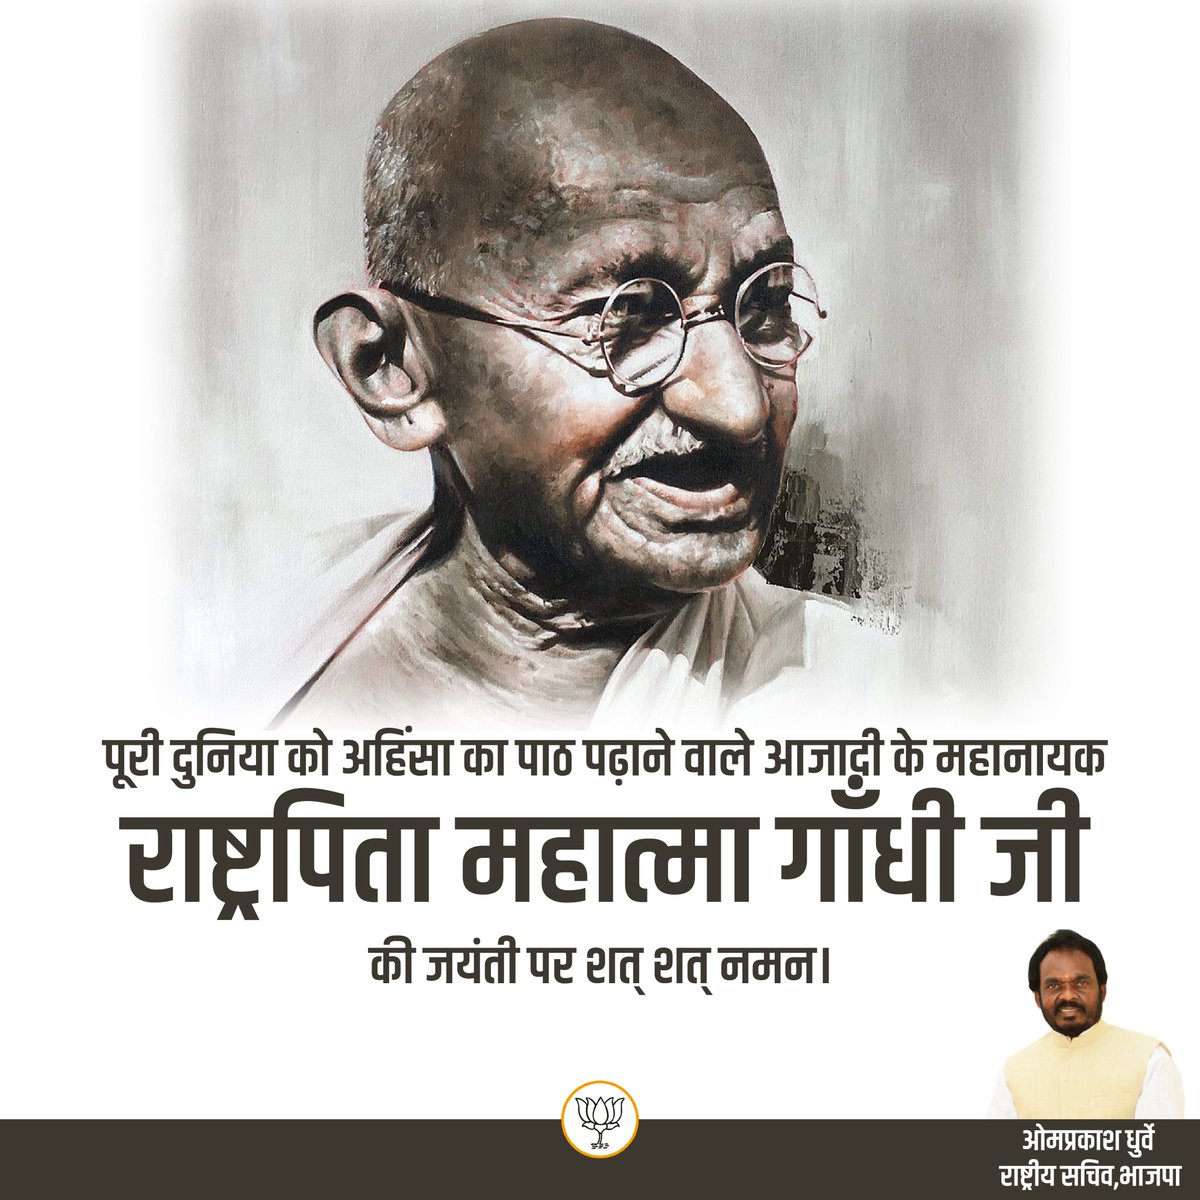 सम्पूर्ण विश्व को सत्य और अहिंसा का मार्ग दिखाने वाले महात्मा गांधी जी की जयंती पर सादर नमन, श्रद्धेय बापू के ‘स्वदेशी’ विचार से प्रेरणा लेकर “आत्मनिर्भर भारत- सशक्त भारत” के निर्माण में हम सजगता के साथ अपना उपयोगी योगदान देने का संकल्प लें। #GandhiJayanti